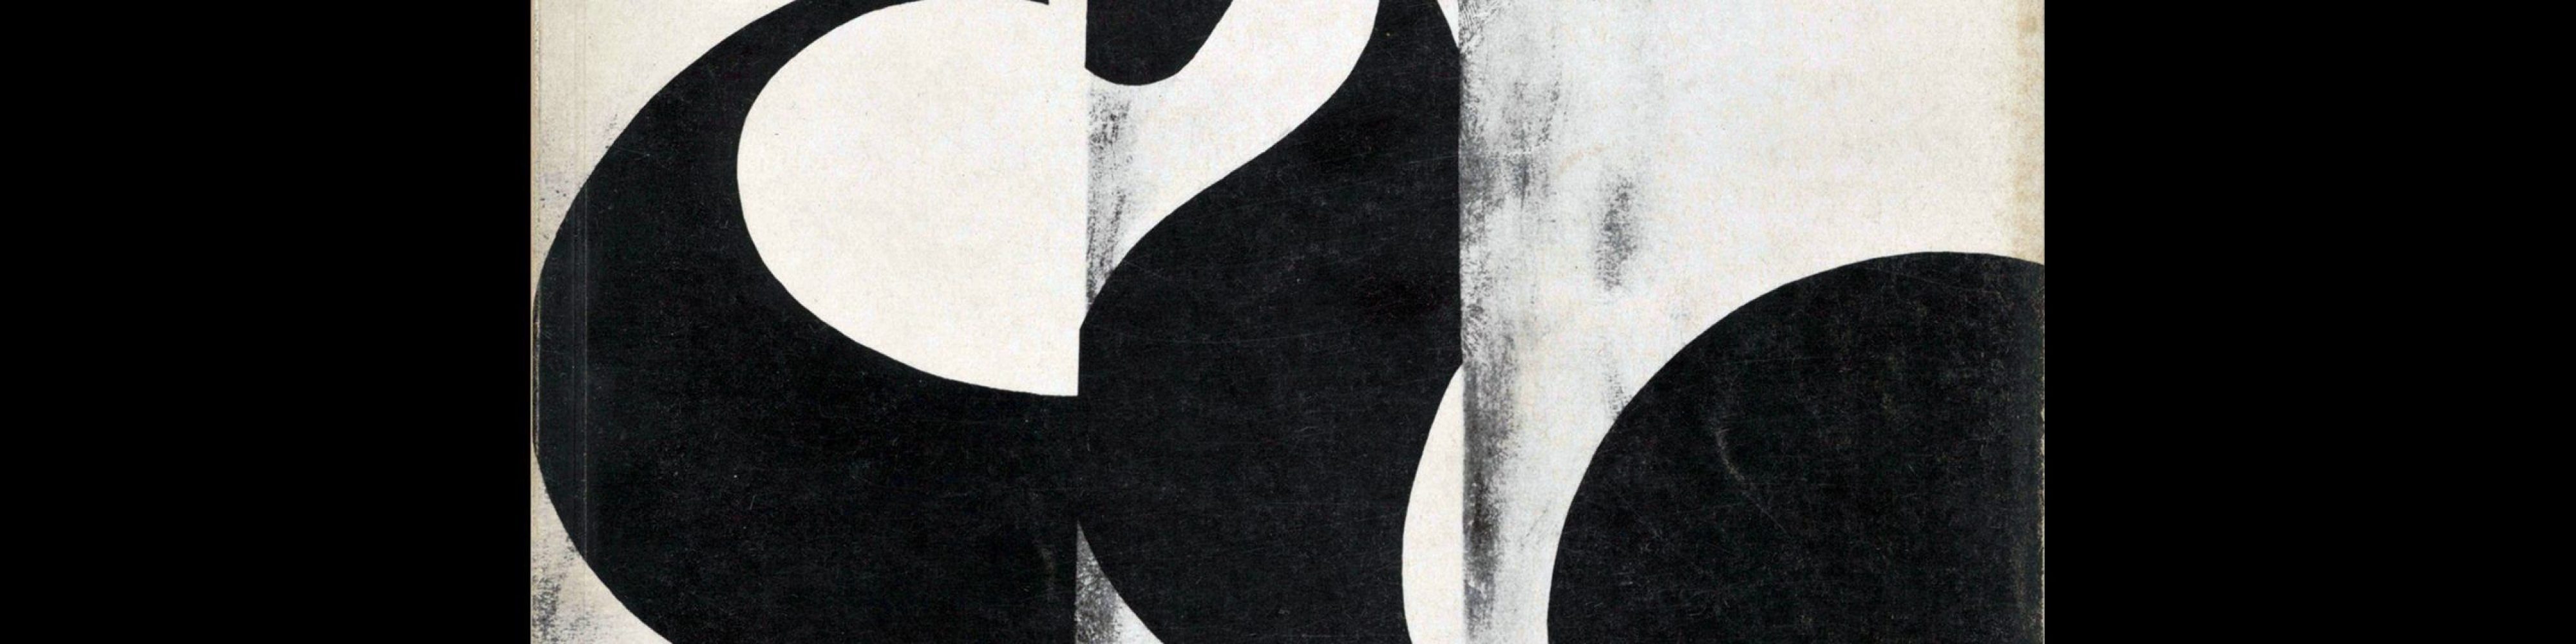 Gebrauchsgraphik, 1, 1966. Cover design by Rudolf Huber-Wilkoff